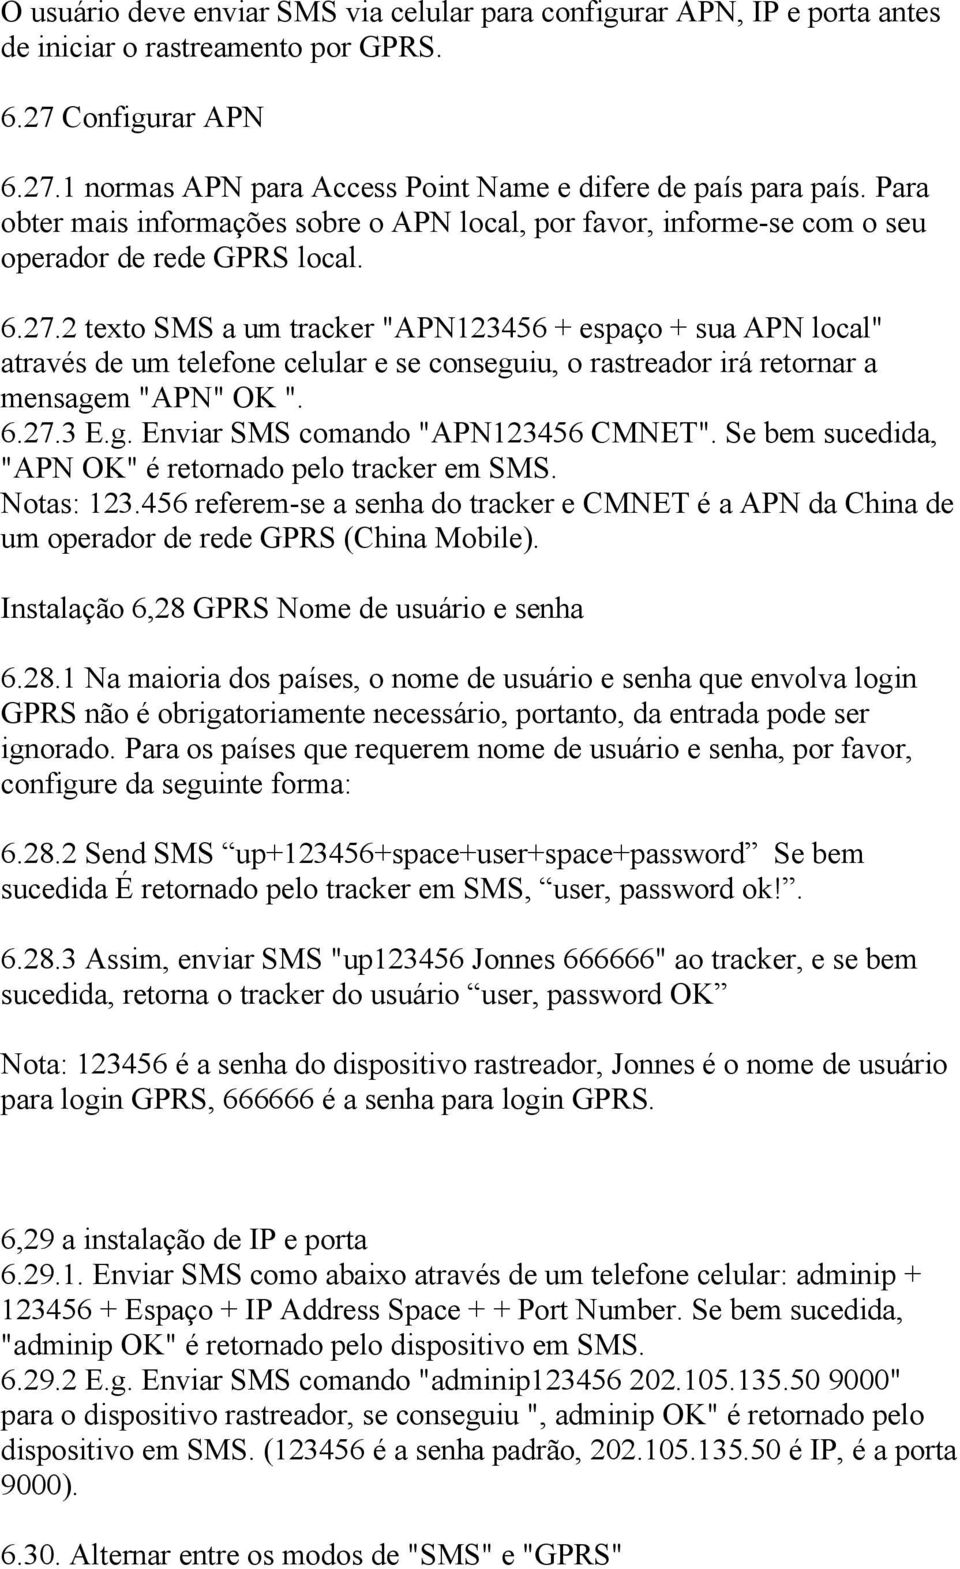 2 texto SMS a um tracker "APN123456 + espaço + sua APN local" através de um telefone celular e se conseguiu, o rastreador irá retornar a mensagem "APN" OK ". 6.27.3 E.g. Enviar SMS comando "APN123456 CMNET".